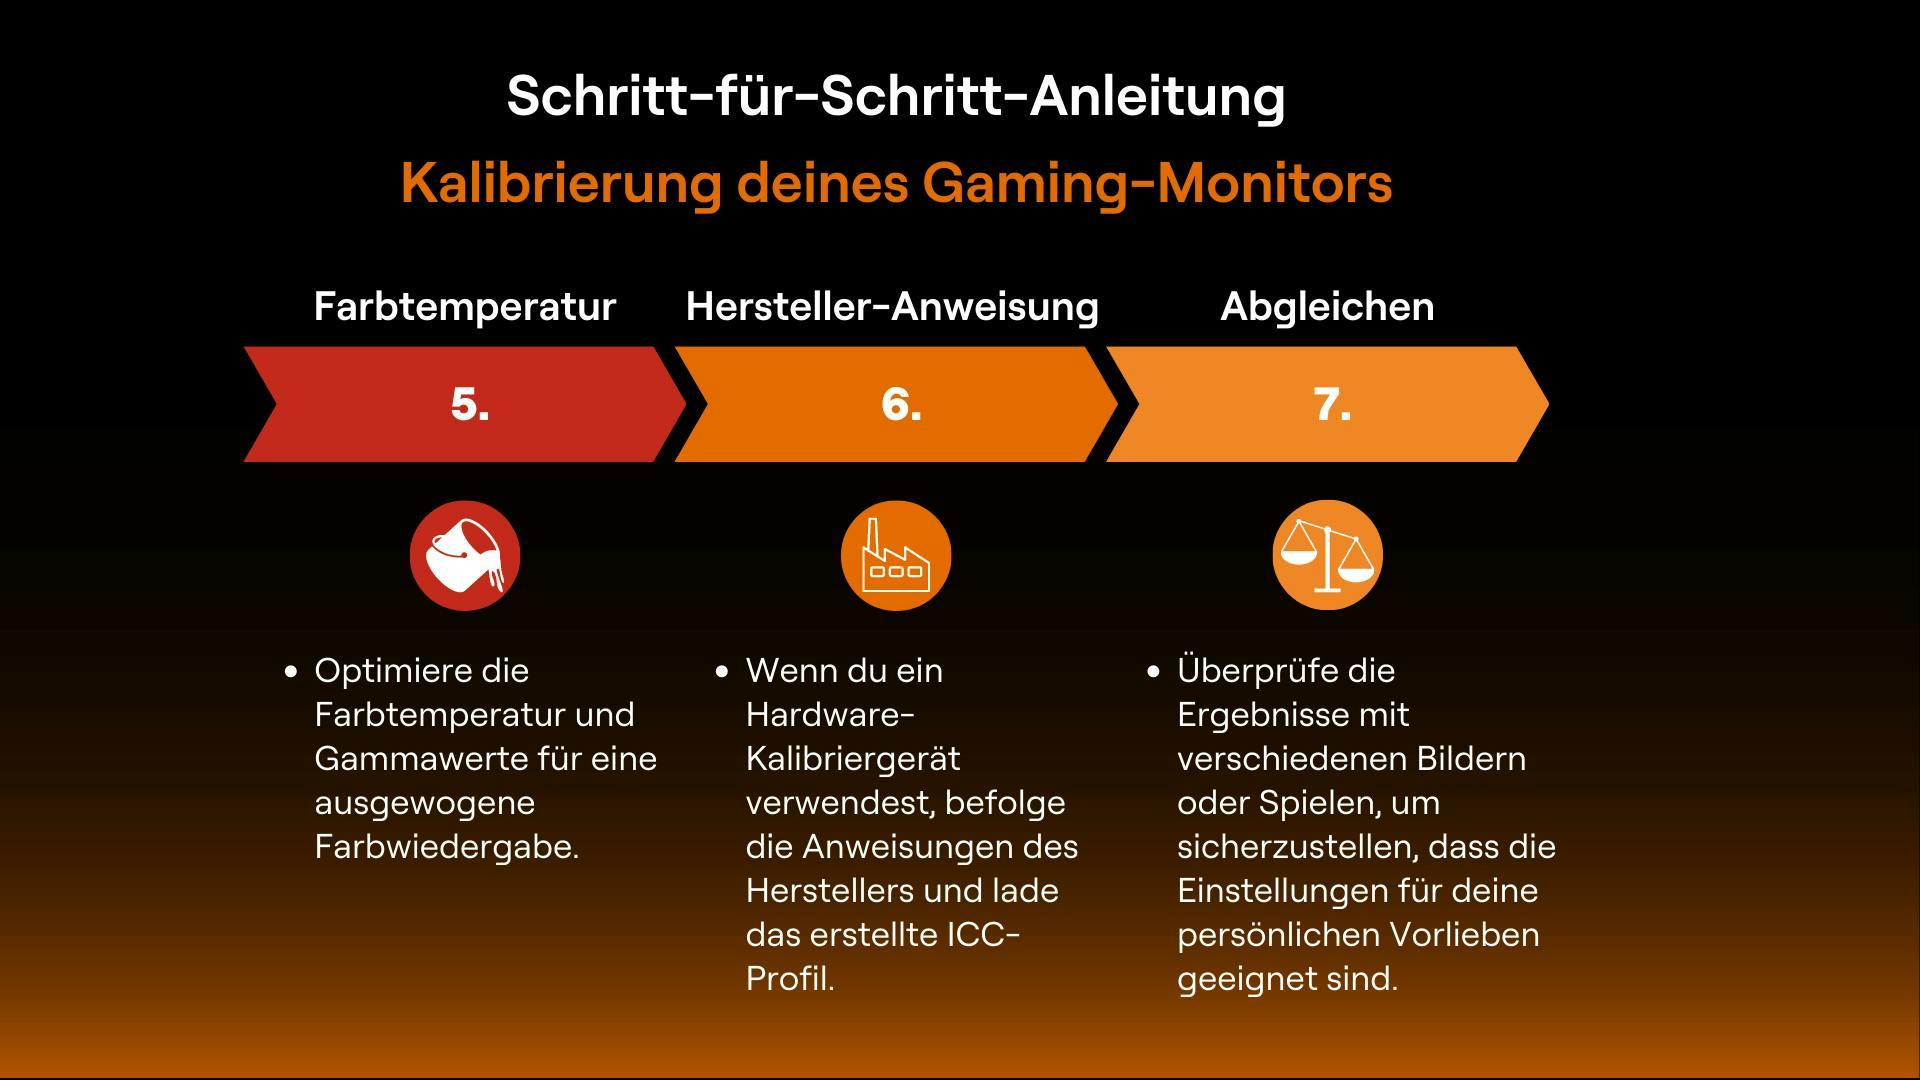 Der zweite Teil einer Anleitung zur Kalibrierung eines Gaming-Monitors. Die Schritte sind Farbtemperatur, Hersteller Anweisung und Abgleich.